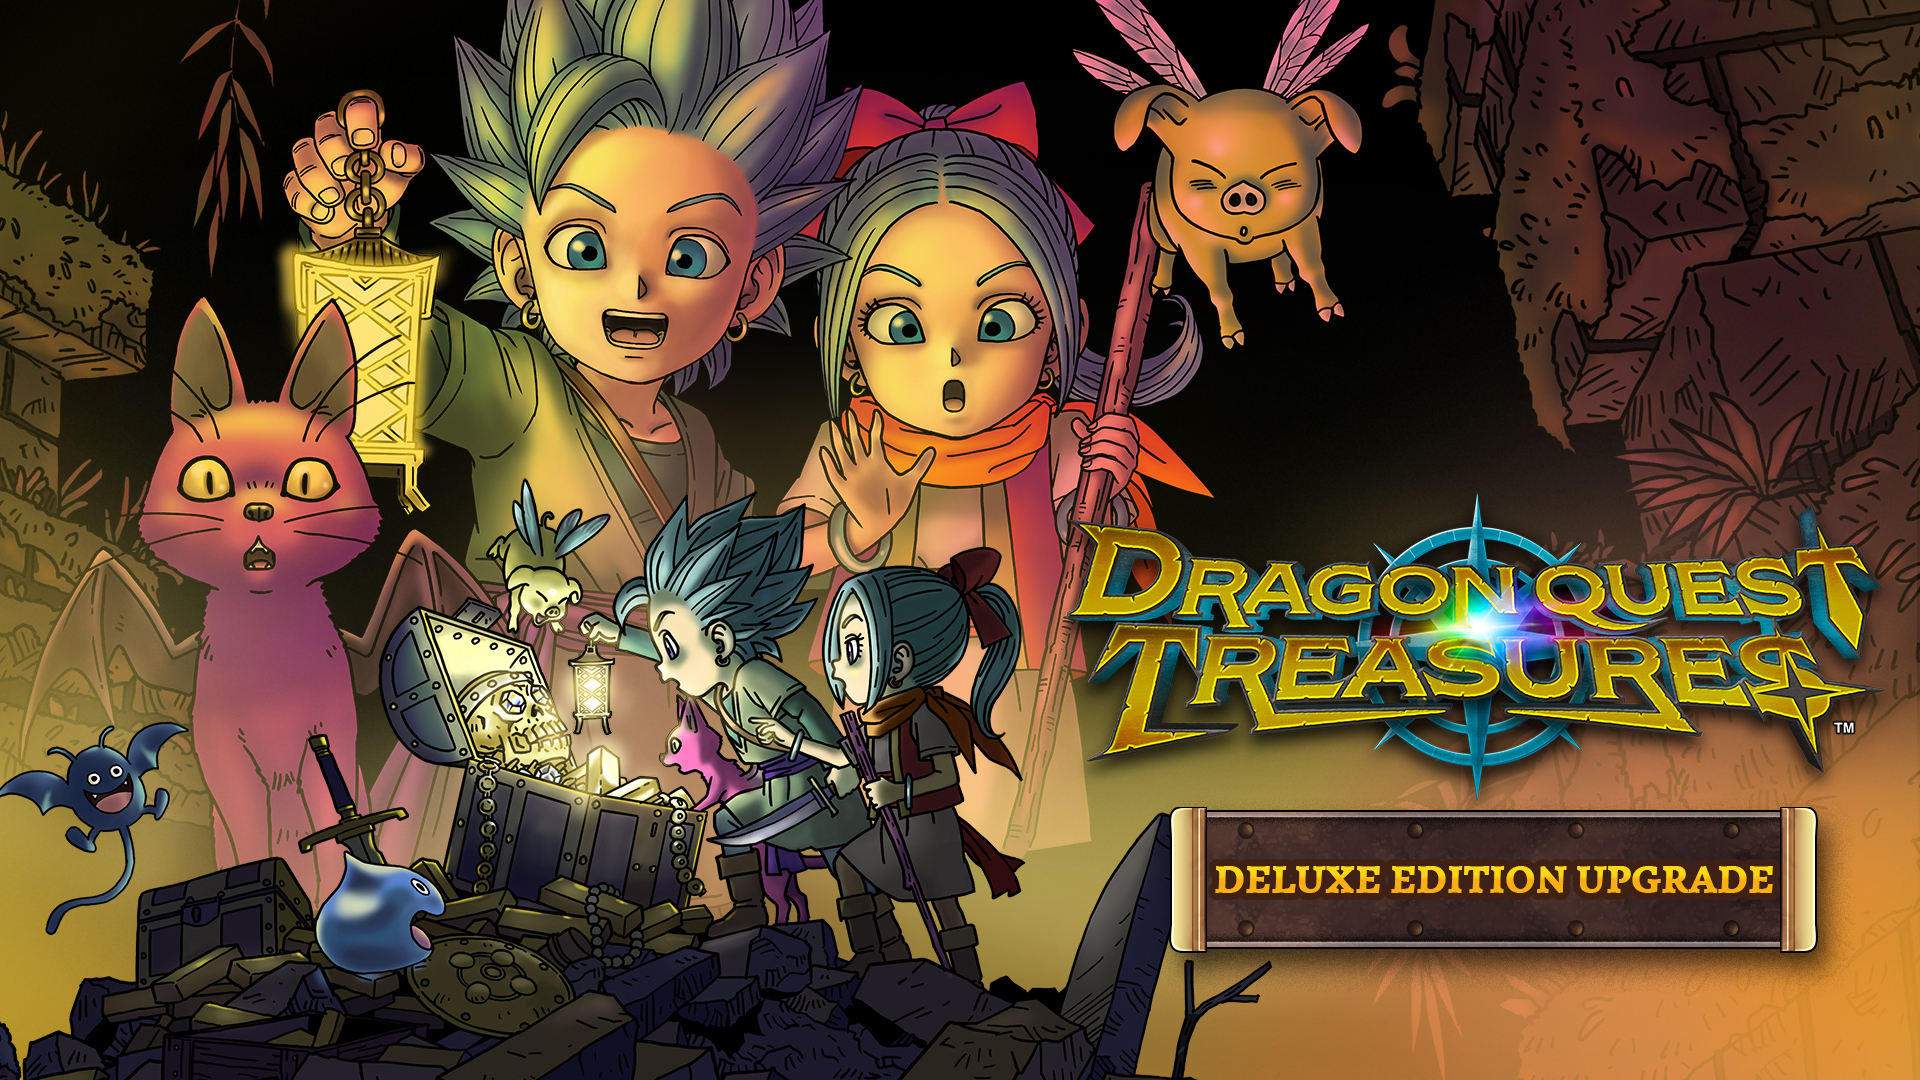 DRAGON QUEST TREASURES Digital Deluxe Edition Upgrade